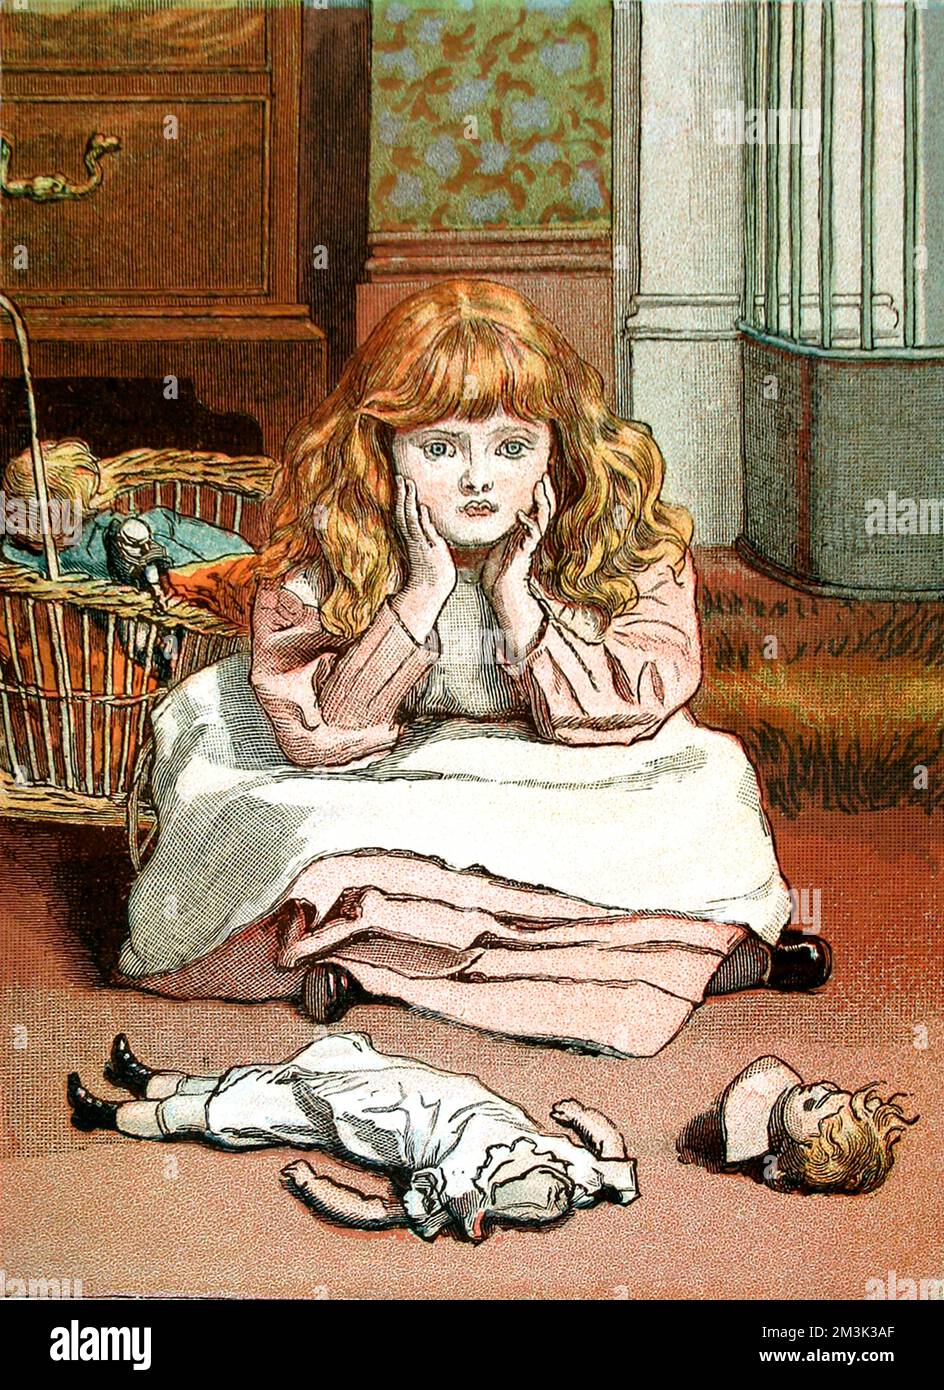 Die Abbildung zeigt ein kleines viktorianisches Mädchen mit ihrer kaputten Puppe. Dieses Bild trug ursprünglich den Titel „I'm just tinking where Dolls goes when they Sterben“ und war Teil einer Sammlung von Skizzen von Emily Lees, die „kleine Mütter“ genannt wurden. Datum: Weihnachten Nummer 1888 Stockfoto